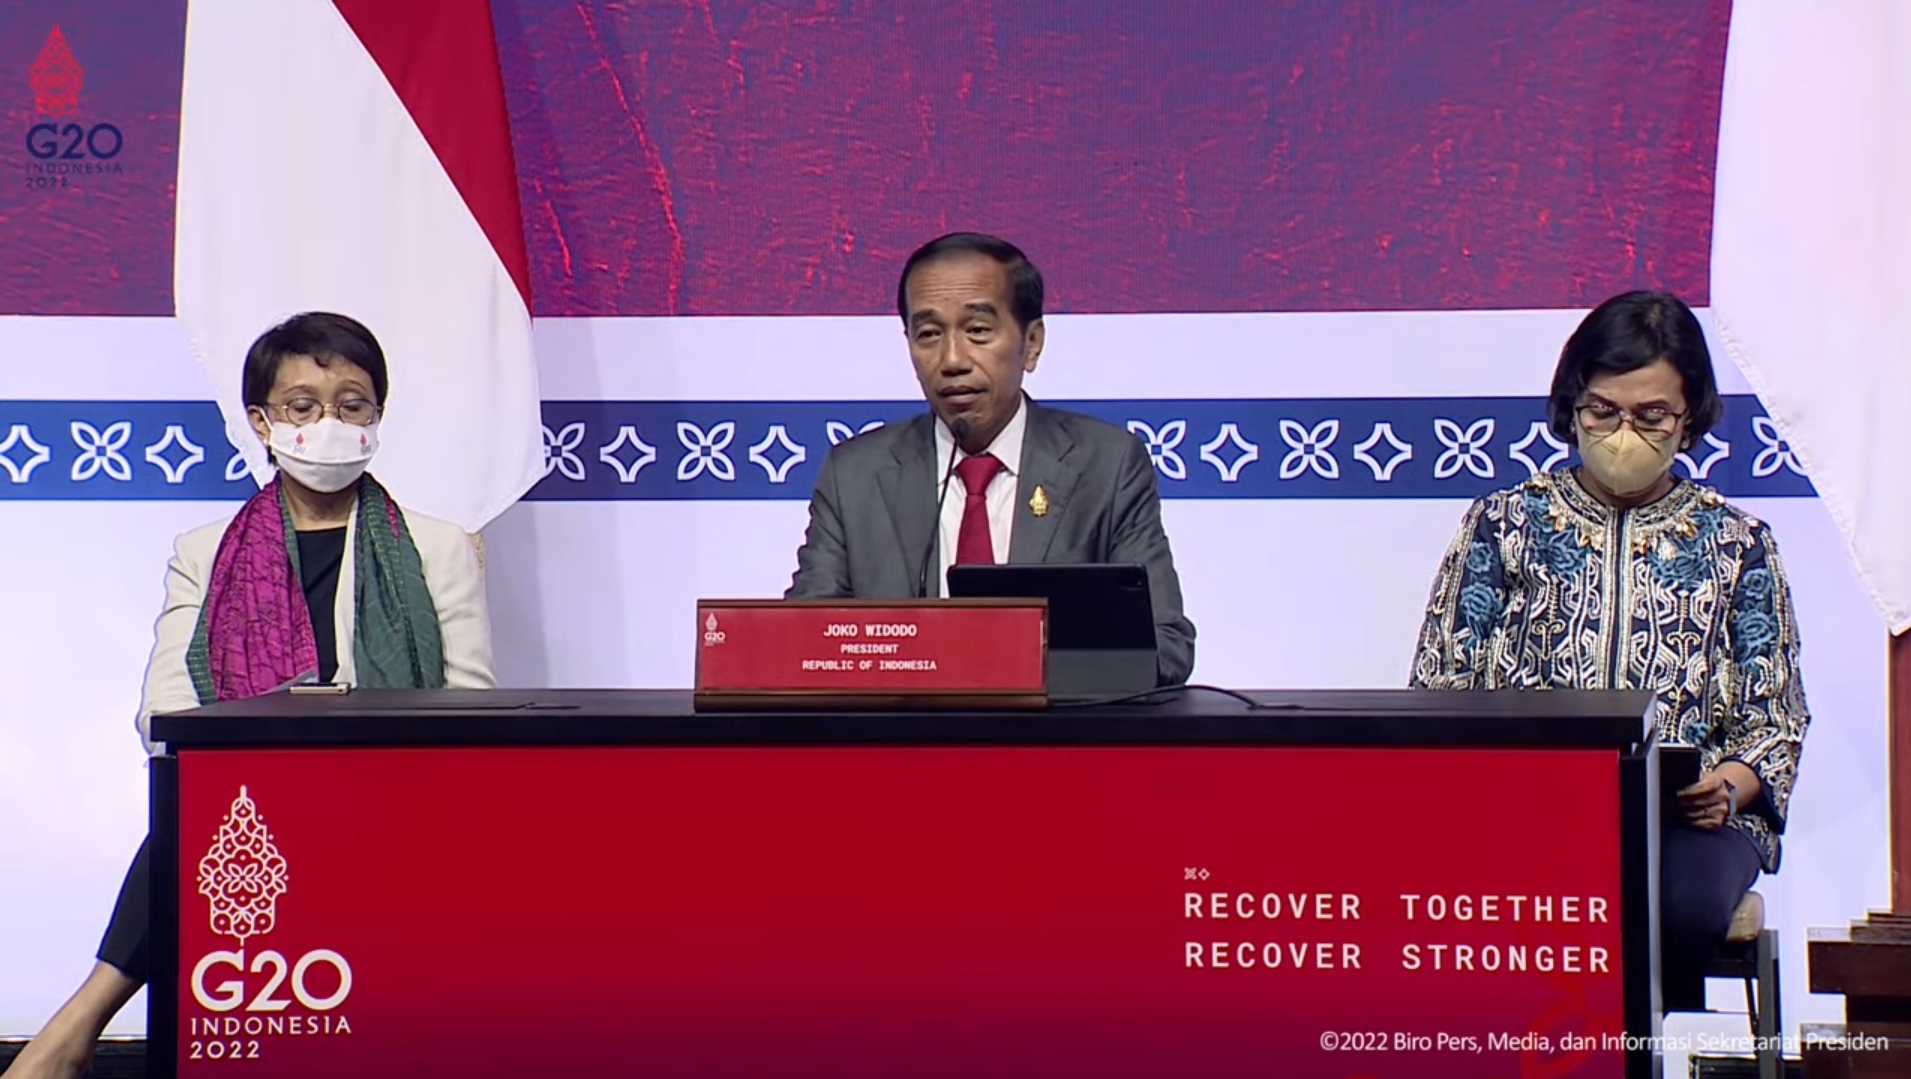 Presidensi G20 Indonesia menghasilkan deklarasi bersama